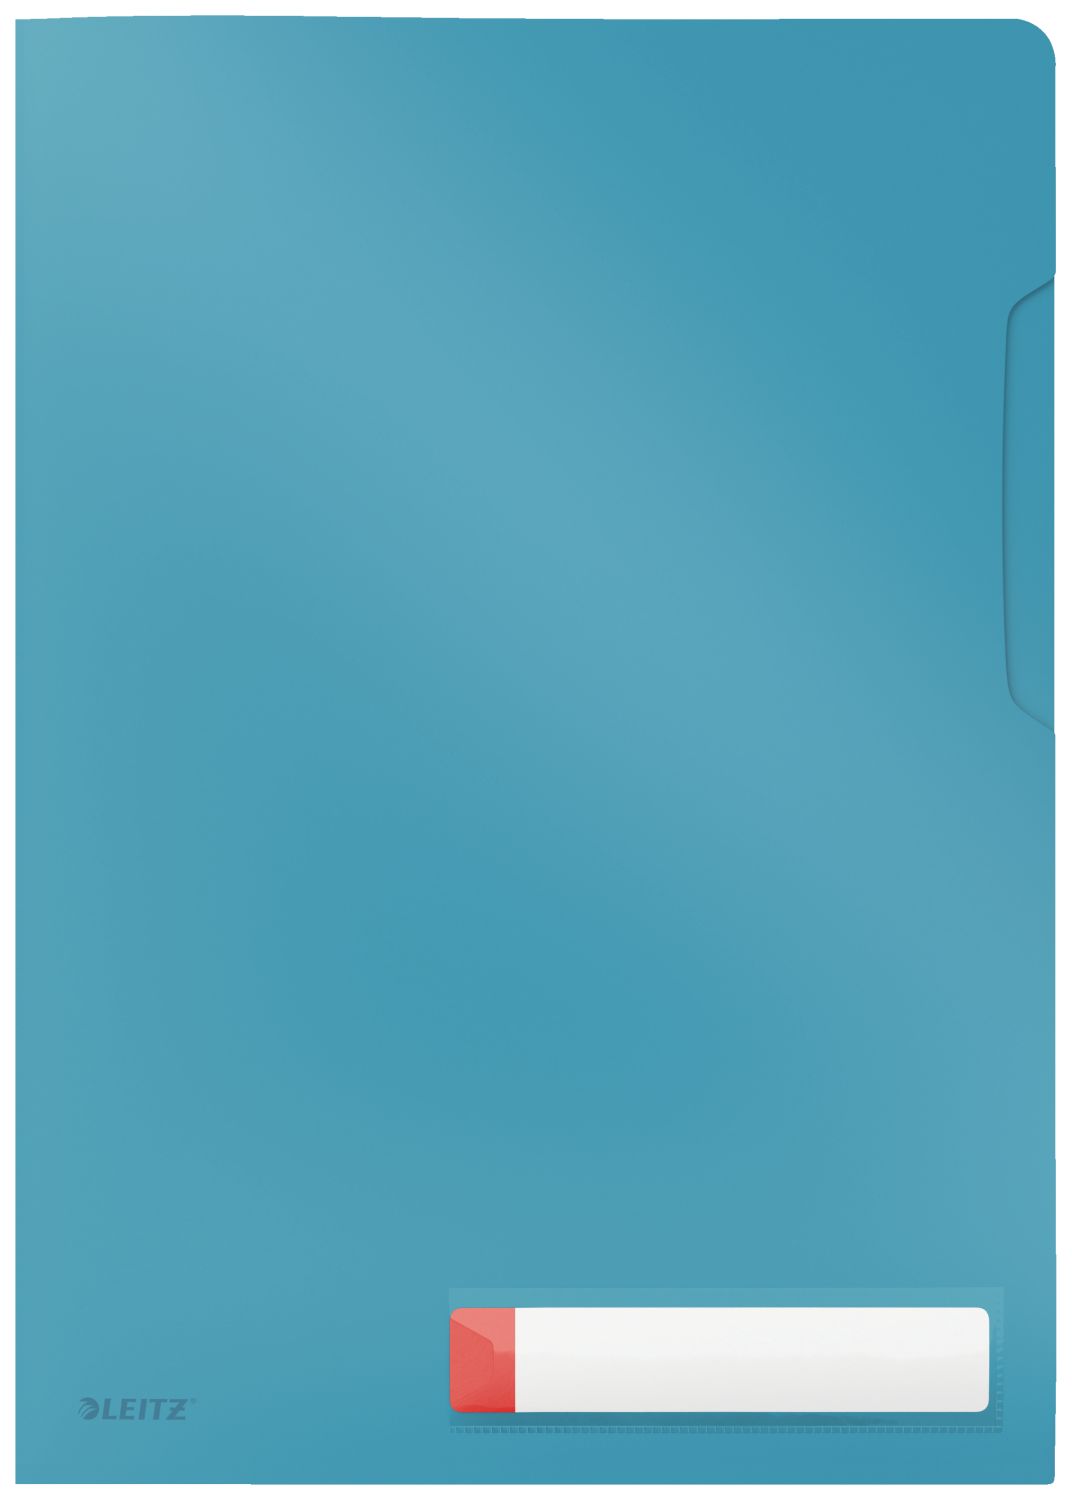 Sichthüllen Leitz Privacy 4708-00-61, DIN A4, 0,20 mm PP, blickdicht, blau matt, 3 Stück